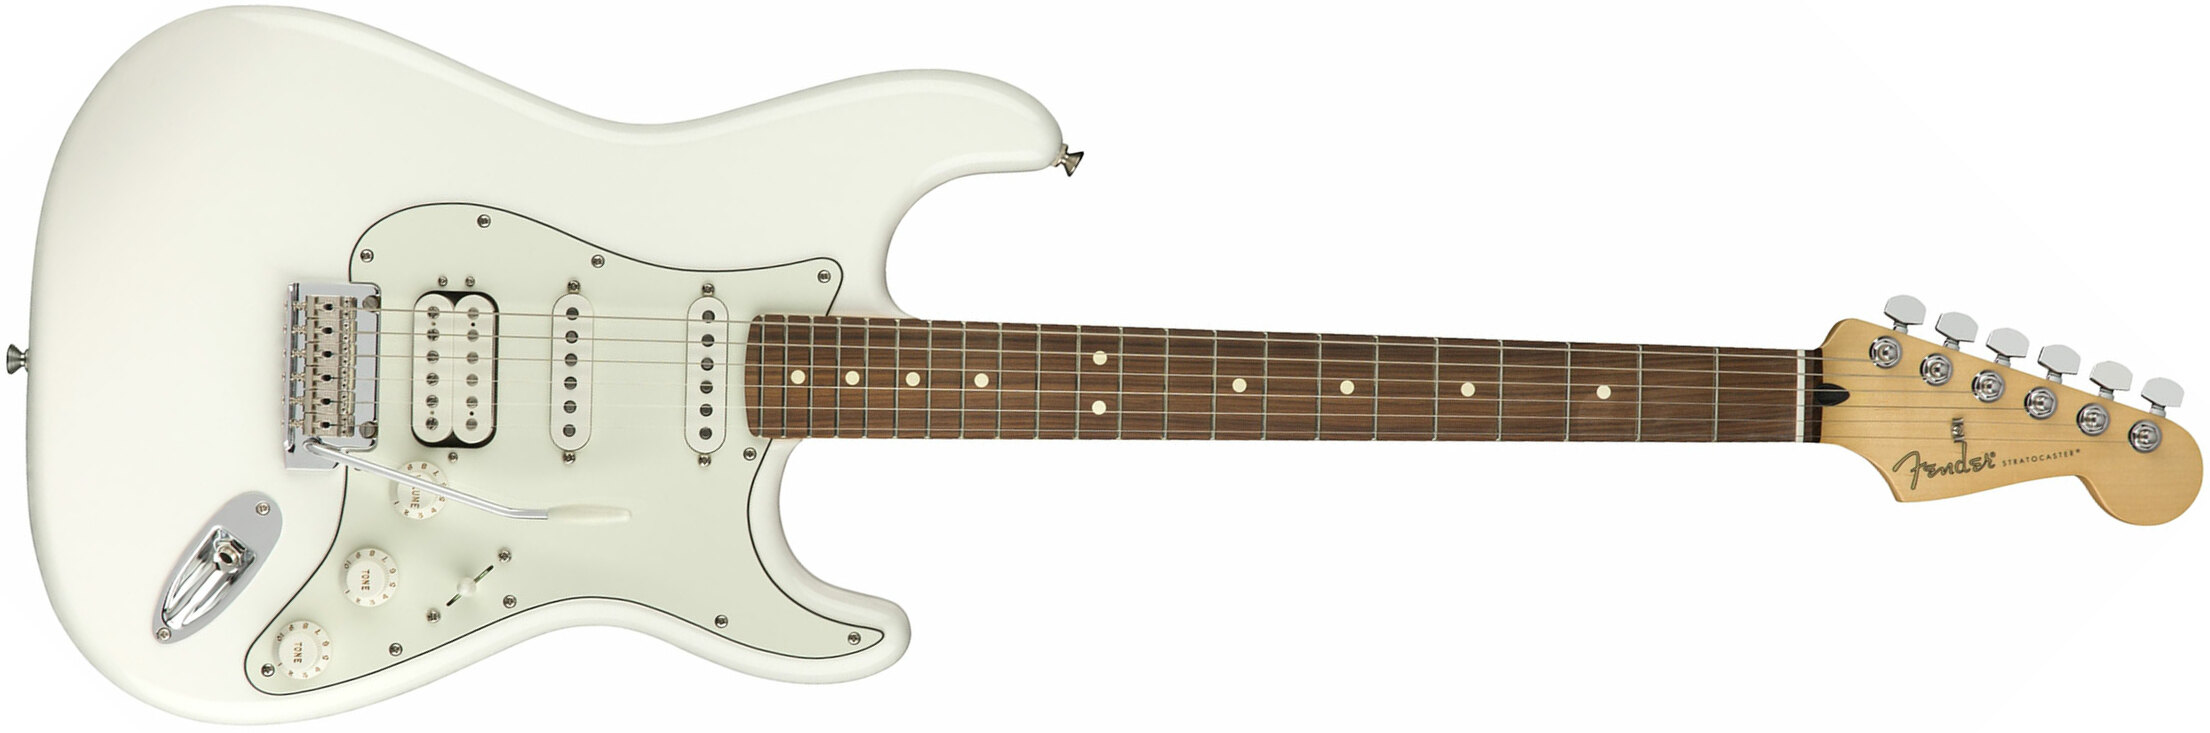 Fender Strat Player Mex Hss Pf - Polar White - Elektrische gitaar in Str-vorm - Main picture